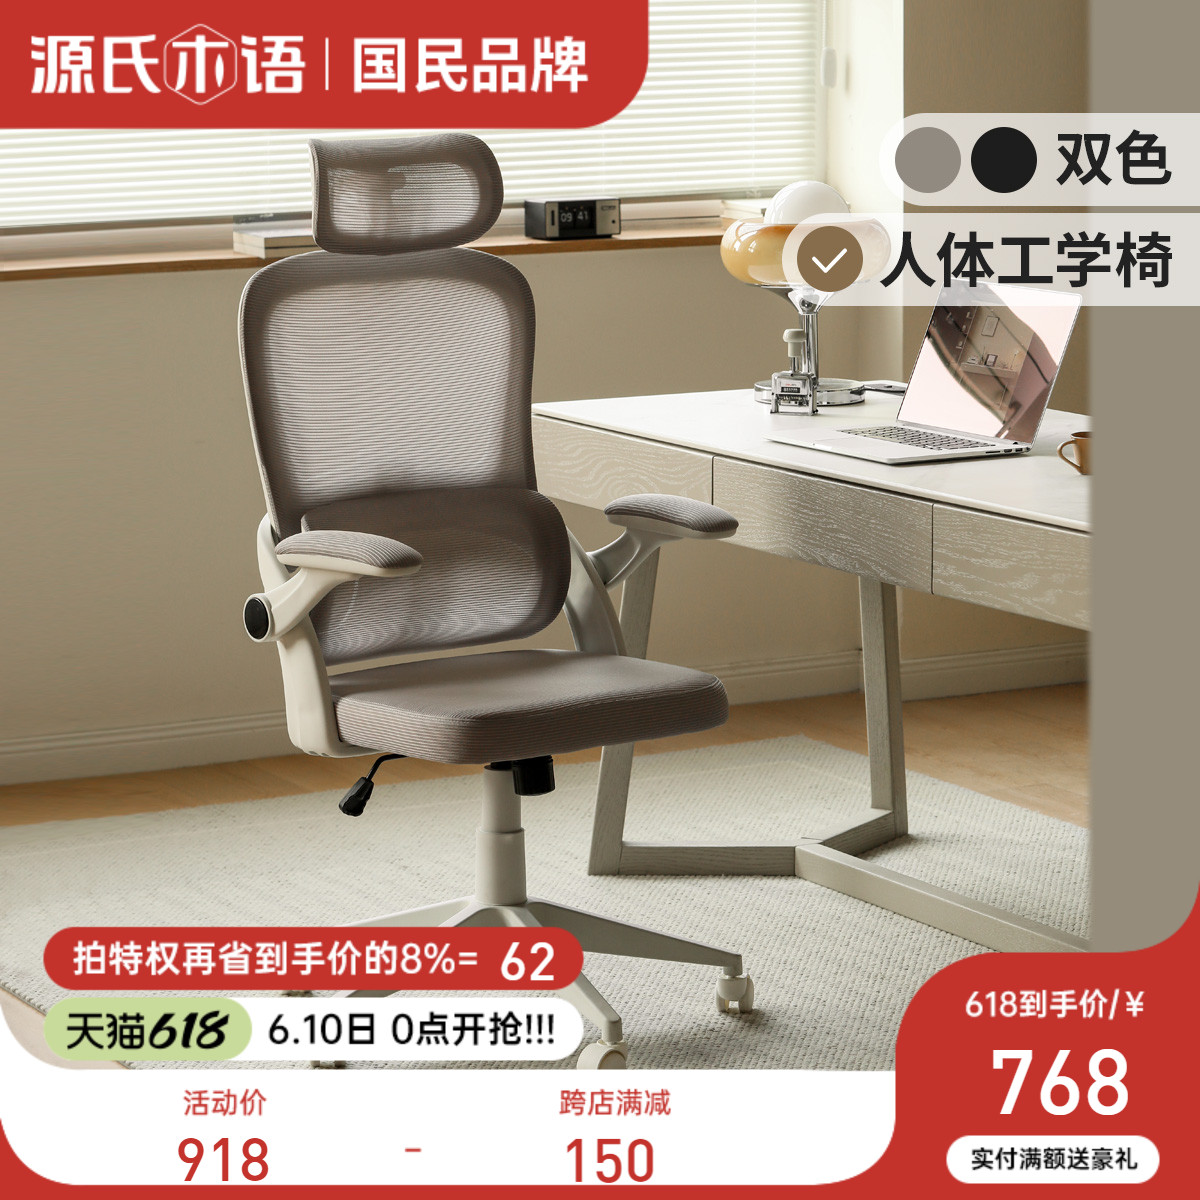 源氏木语办公椅舒适久坐电脑椅家用护腰可升降电竞椅游戏椅转椅